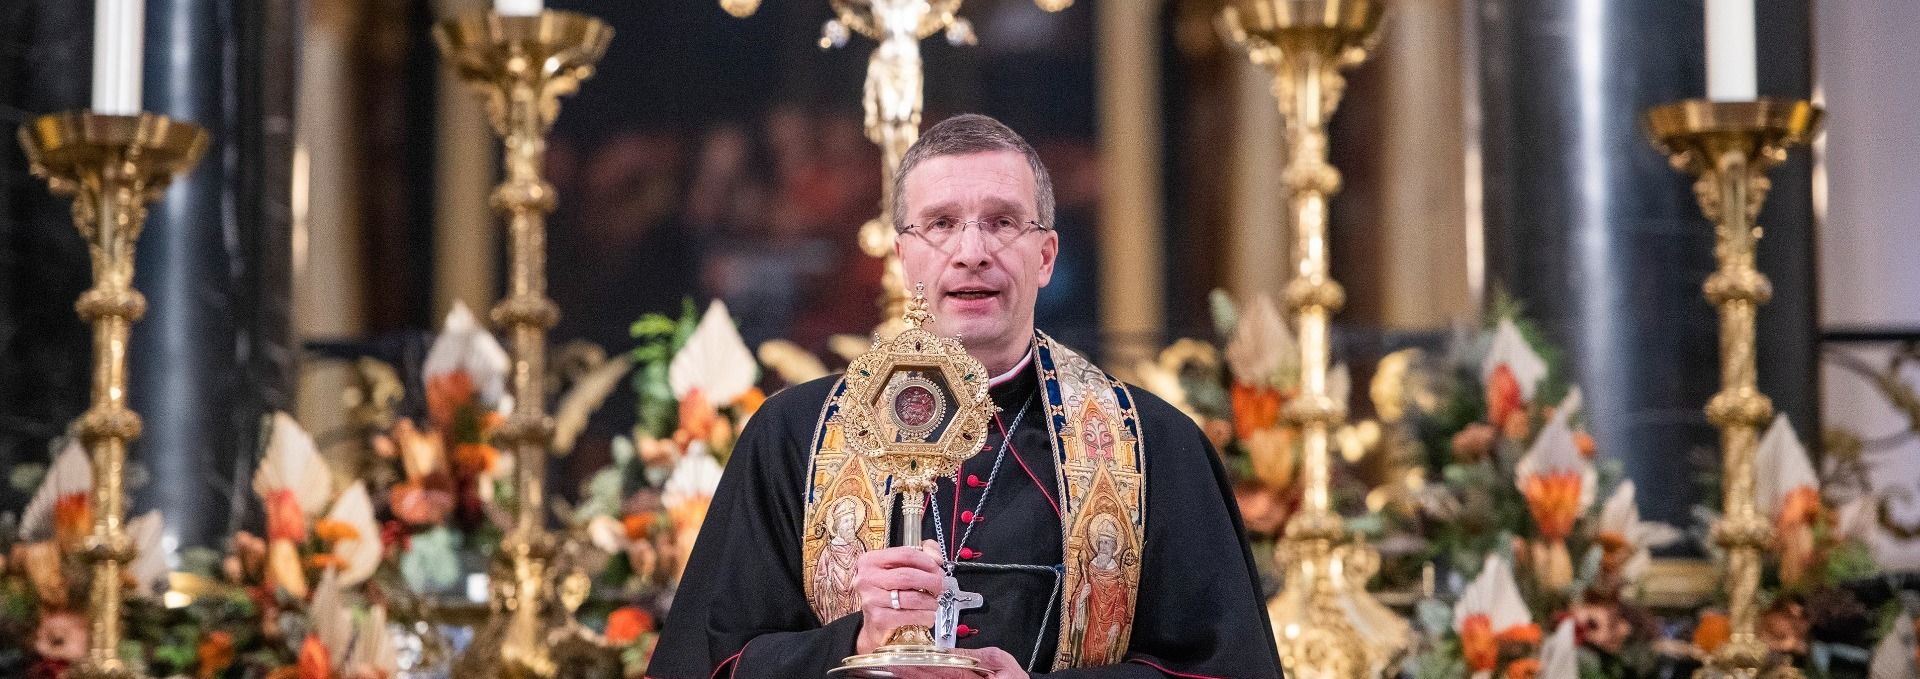 Feierliche Amtseinführung des neuen Fuldaer Bischofs